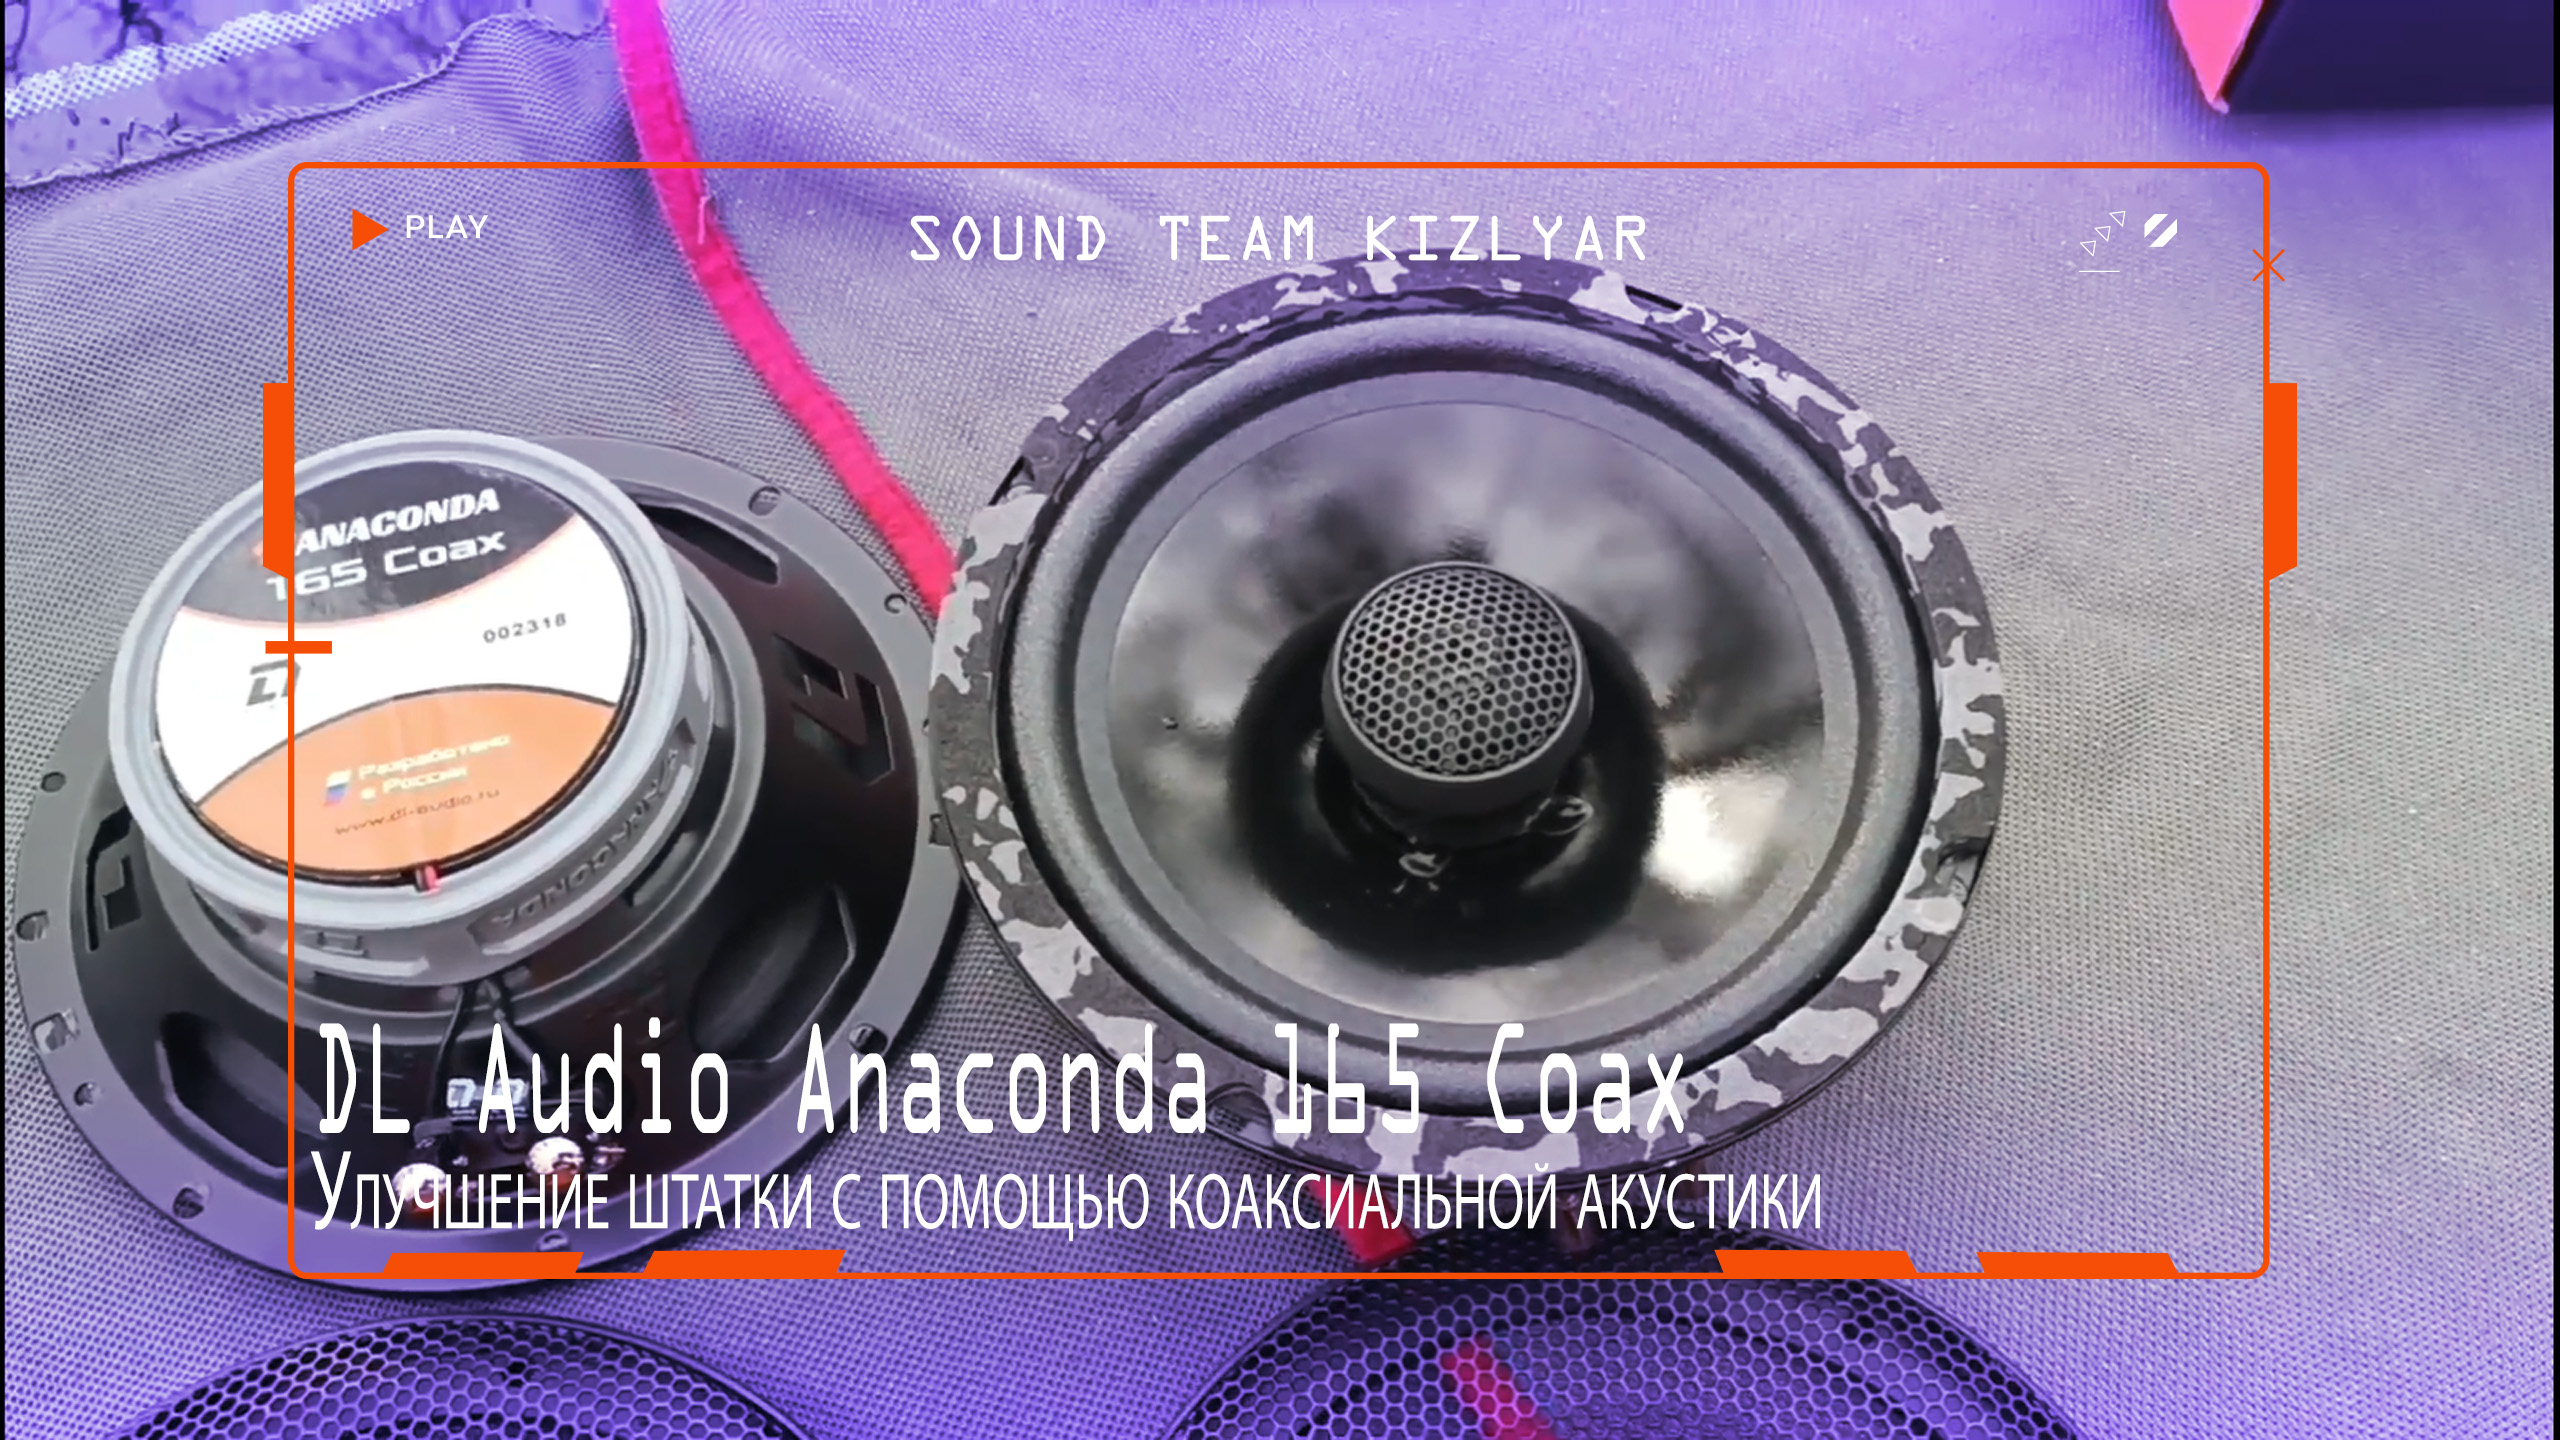 Улучшаем качество звучания в автомобиле с помощью коаксиальной акустики DL Audio Anaconda 165 Coax